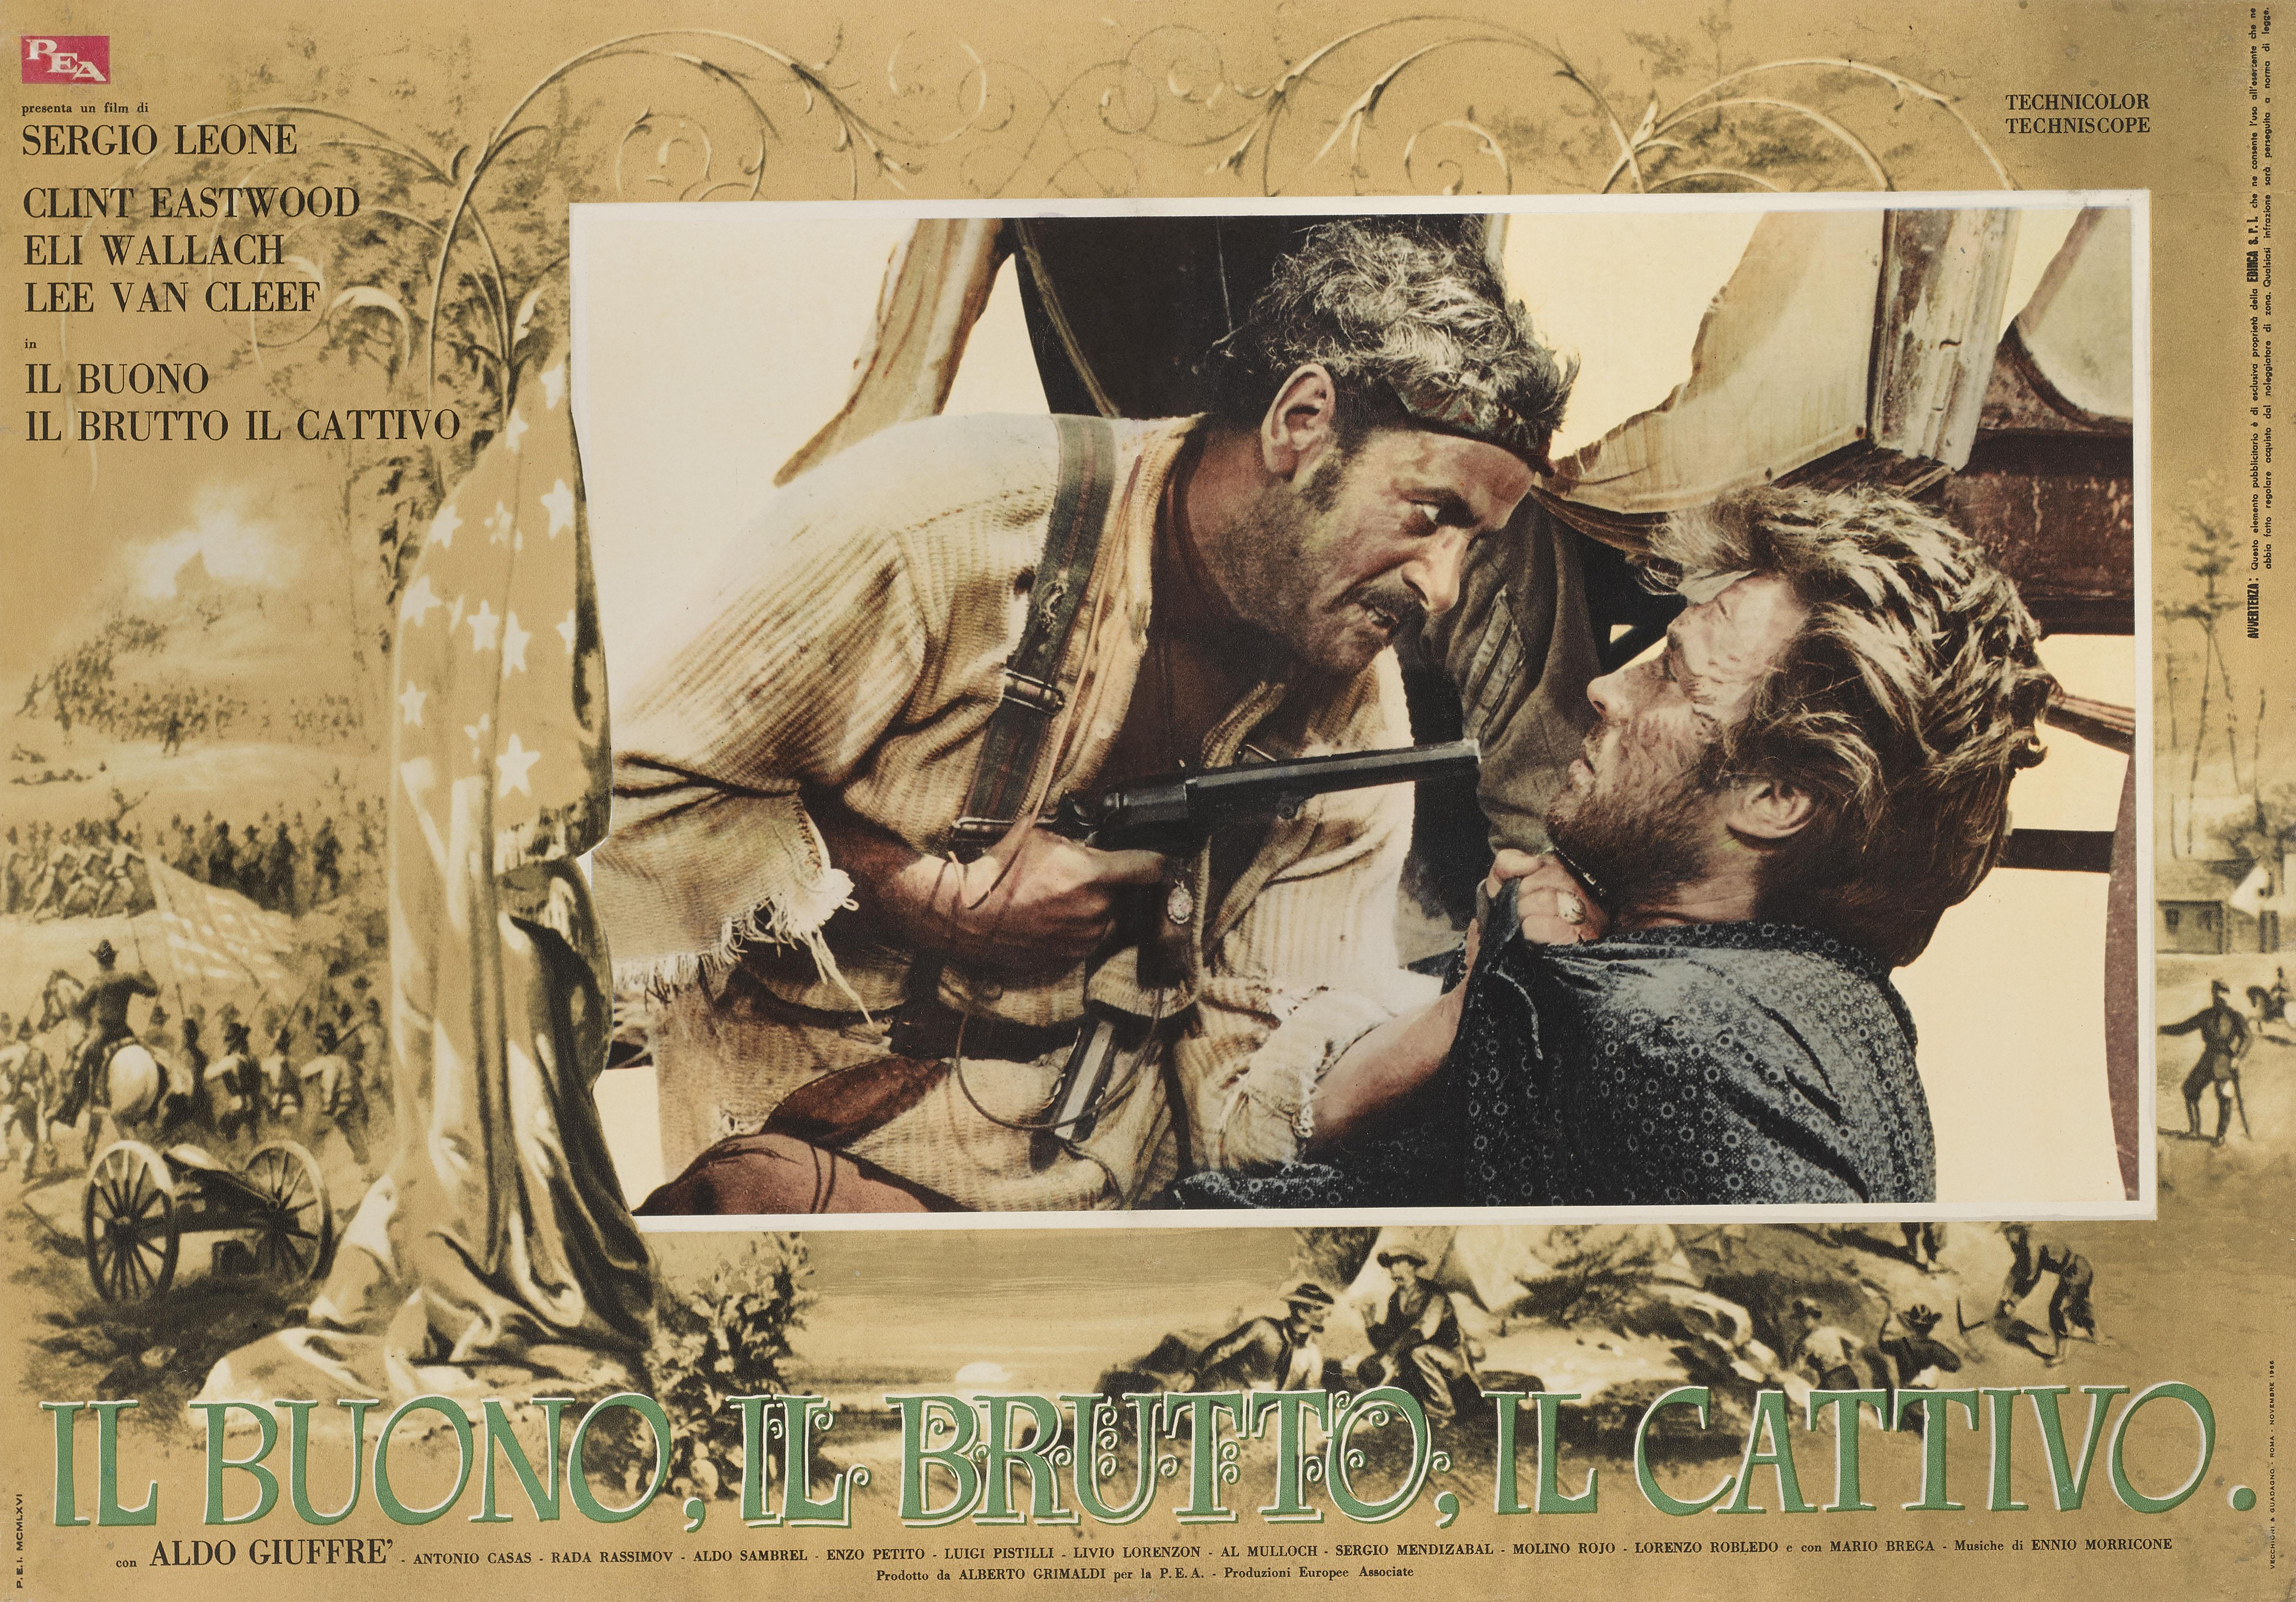 Affiche originale italienne pour le film de 1966 avec Clint Eastwood, Eli Wallach et Lee Van Cleef, réalisé par Sergio Leone. Le bon, la brute et le truand reste l'un des plus grands westerns de tous les temps. Cette affiche est doublée de lin et